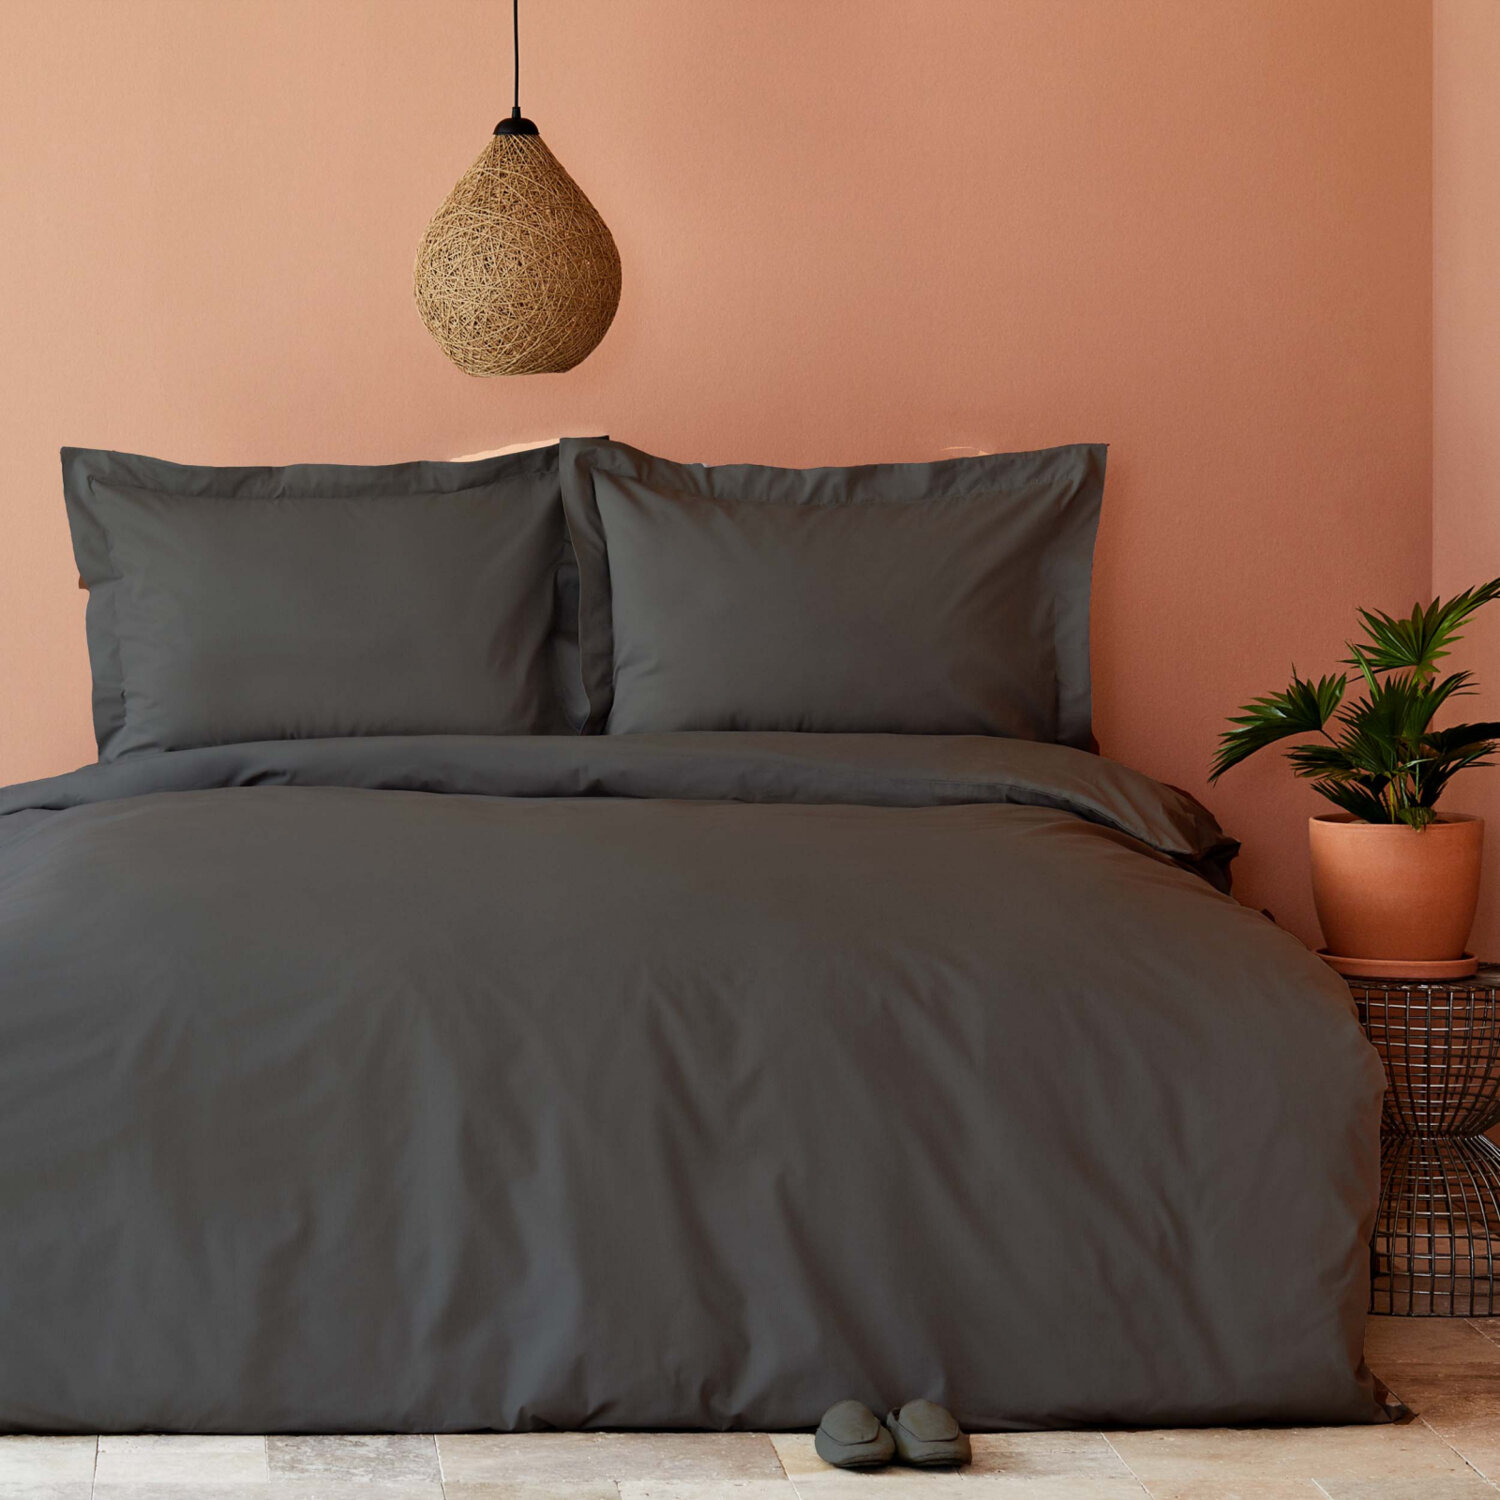 Karaca Home Back To Basic Комплект постельного белья королевского размера из 100 % хлопка антрацитового цвета